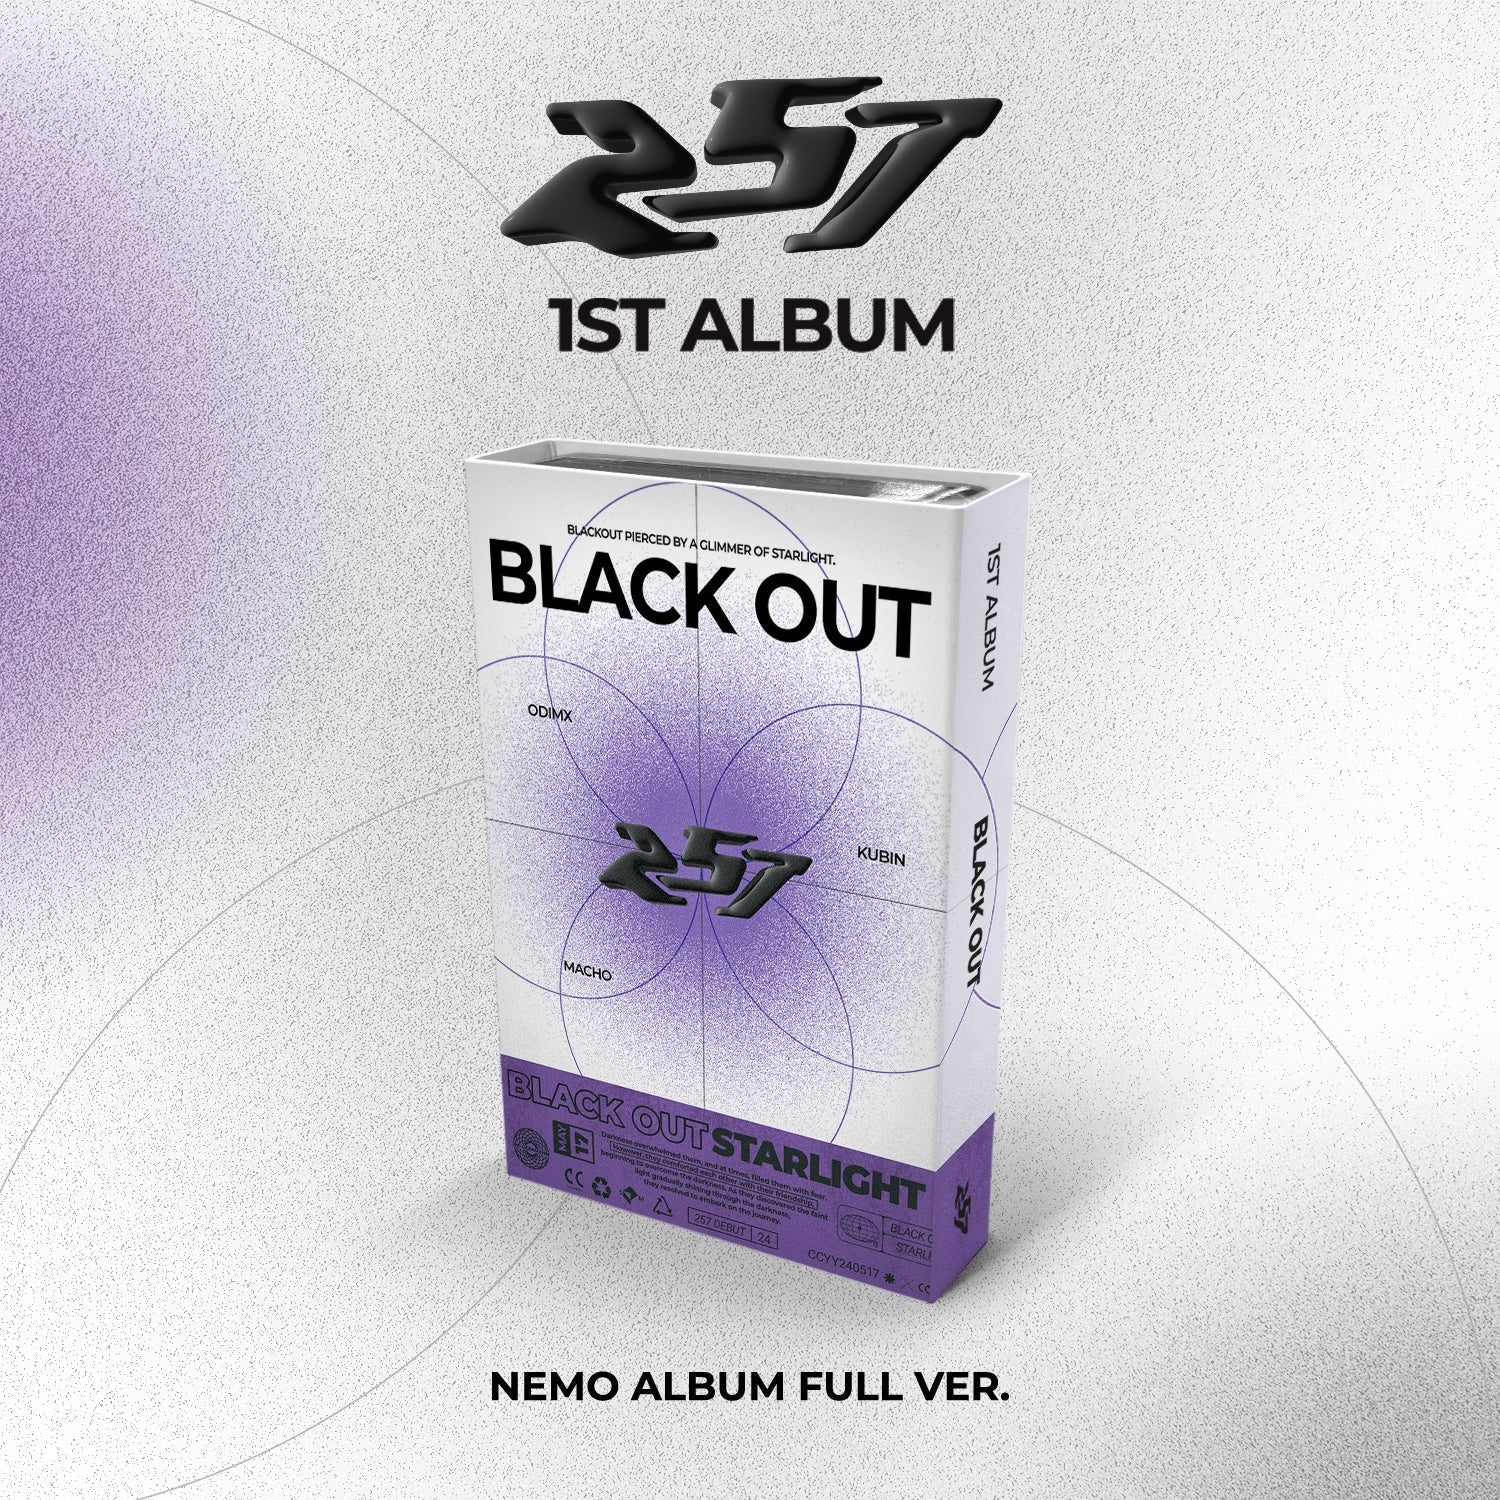 257 - 1ST ALBUM [BLACK OUT] Nemo Album Full Ver. - KPOPHERO